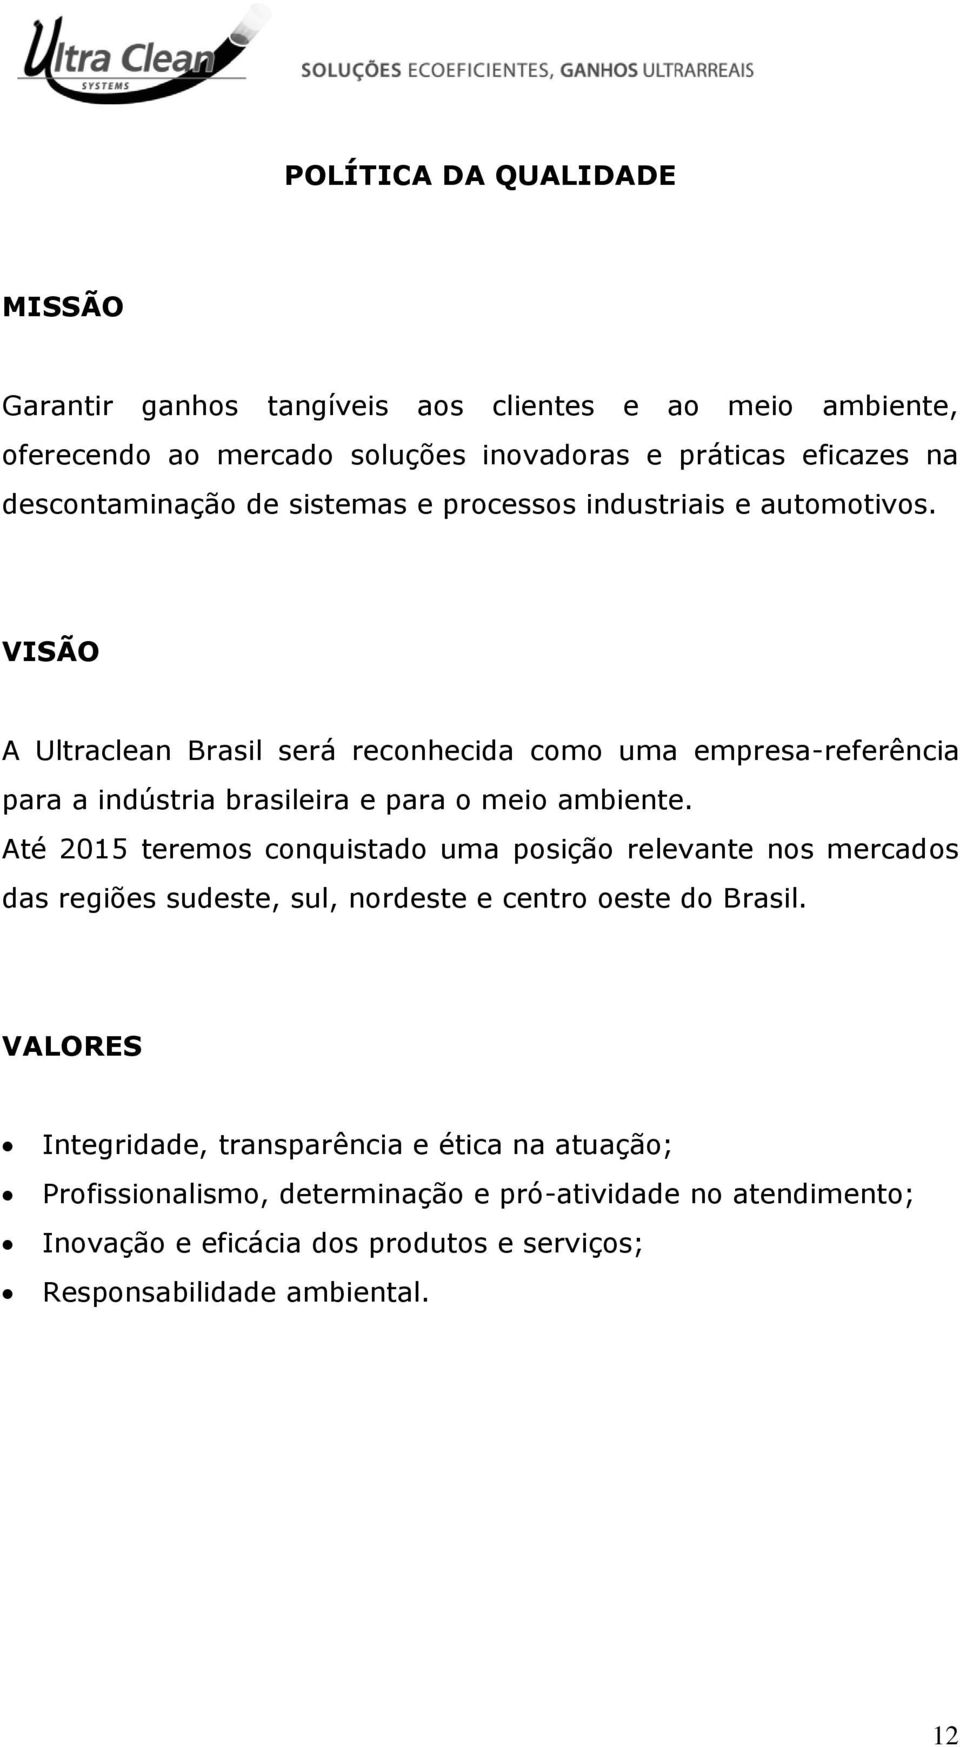 VISÃO A Ultraclean Brasil será reconhecida como uma empresa-referência para a indústria brasileira e para o meio ambiente.